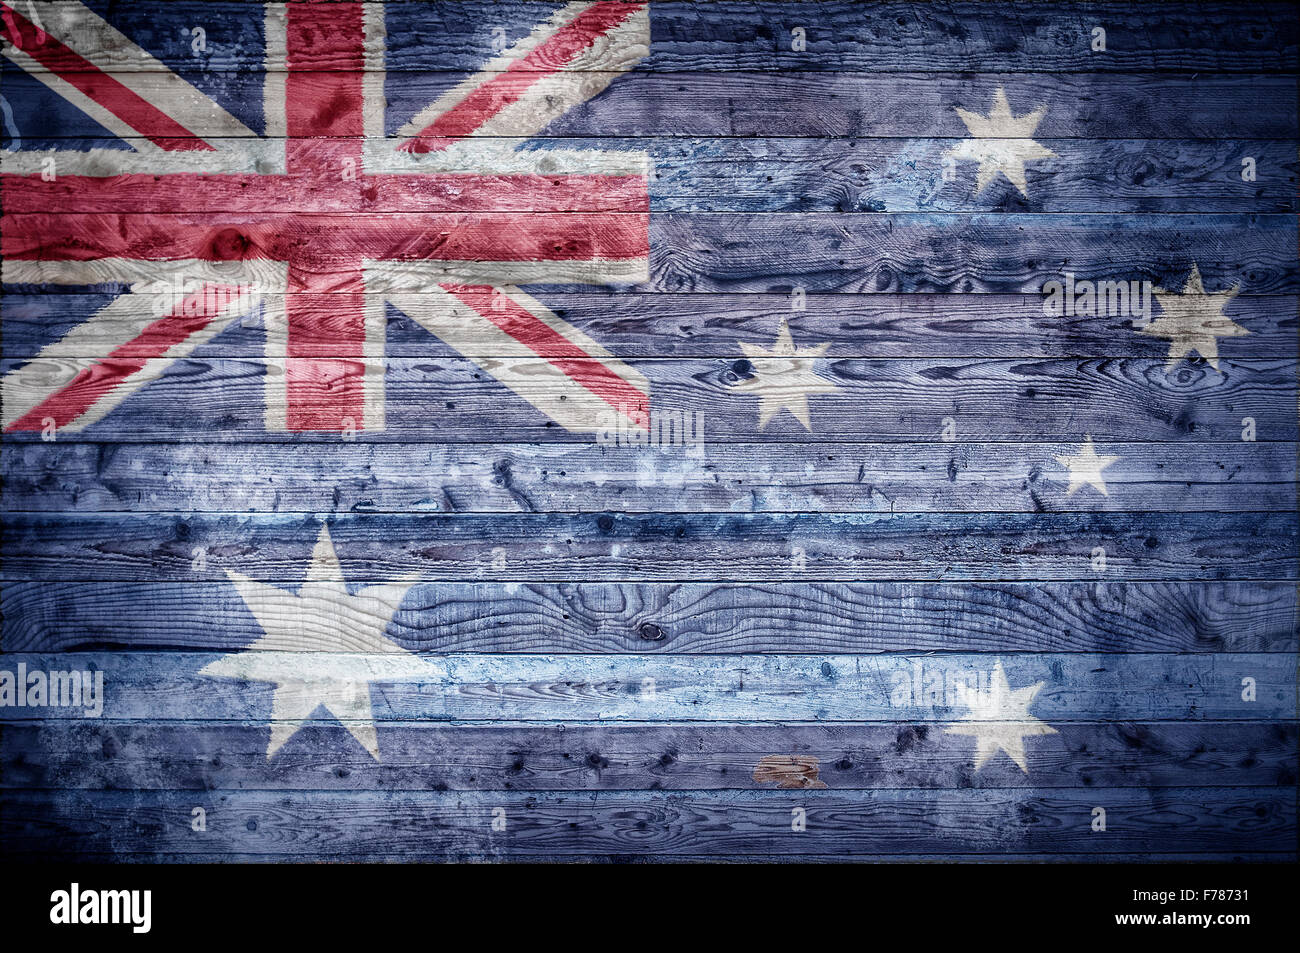 Ein bandtypischen Hintergrundbild der Flagge Australiens auf Holzbrettern einer Wand oder Boden gemalt. Stockfoto